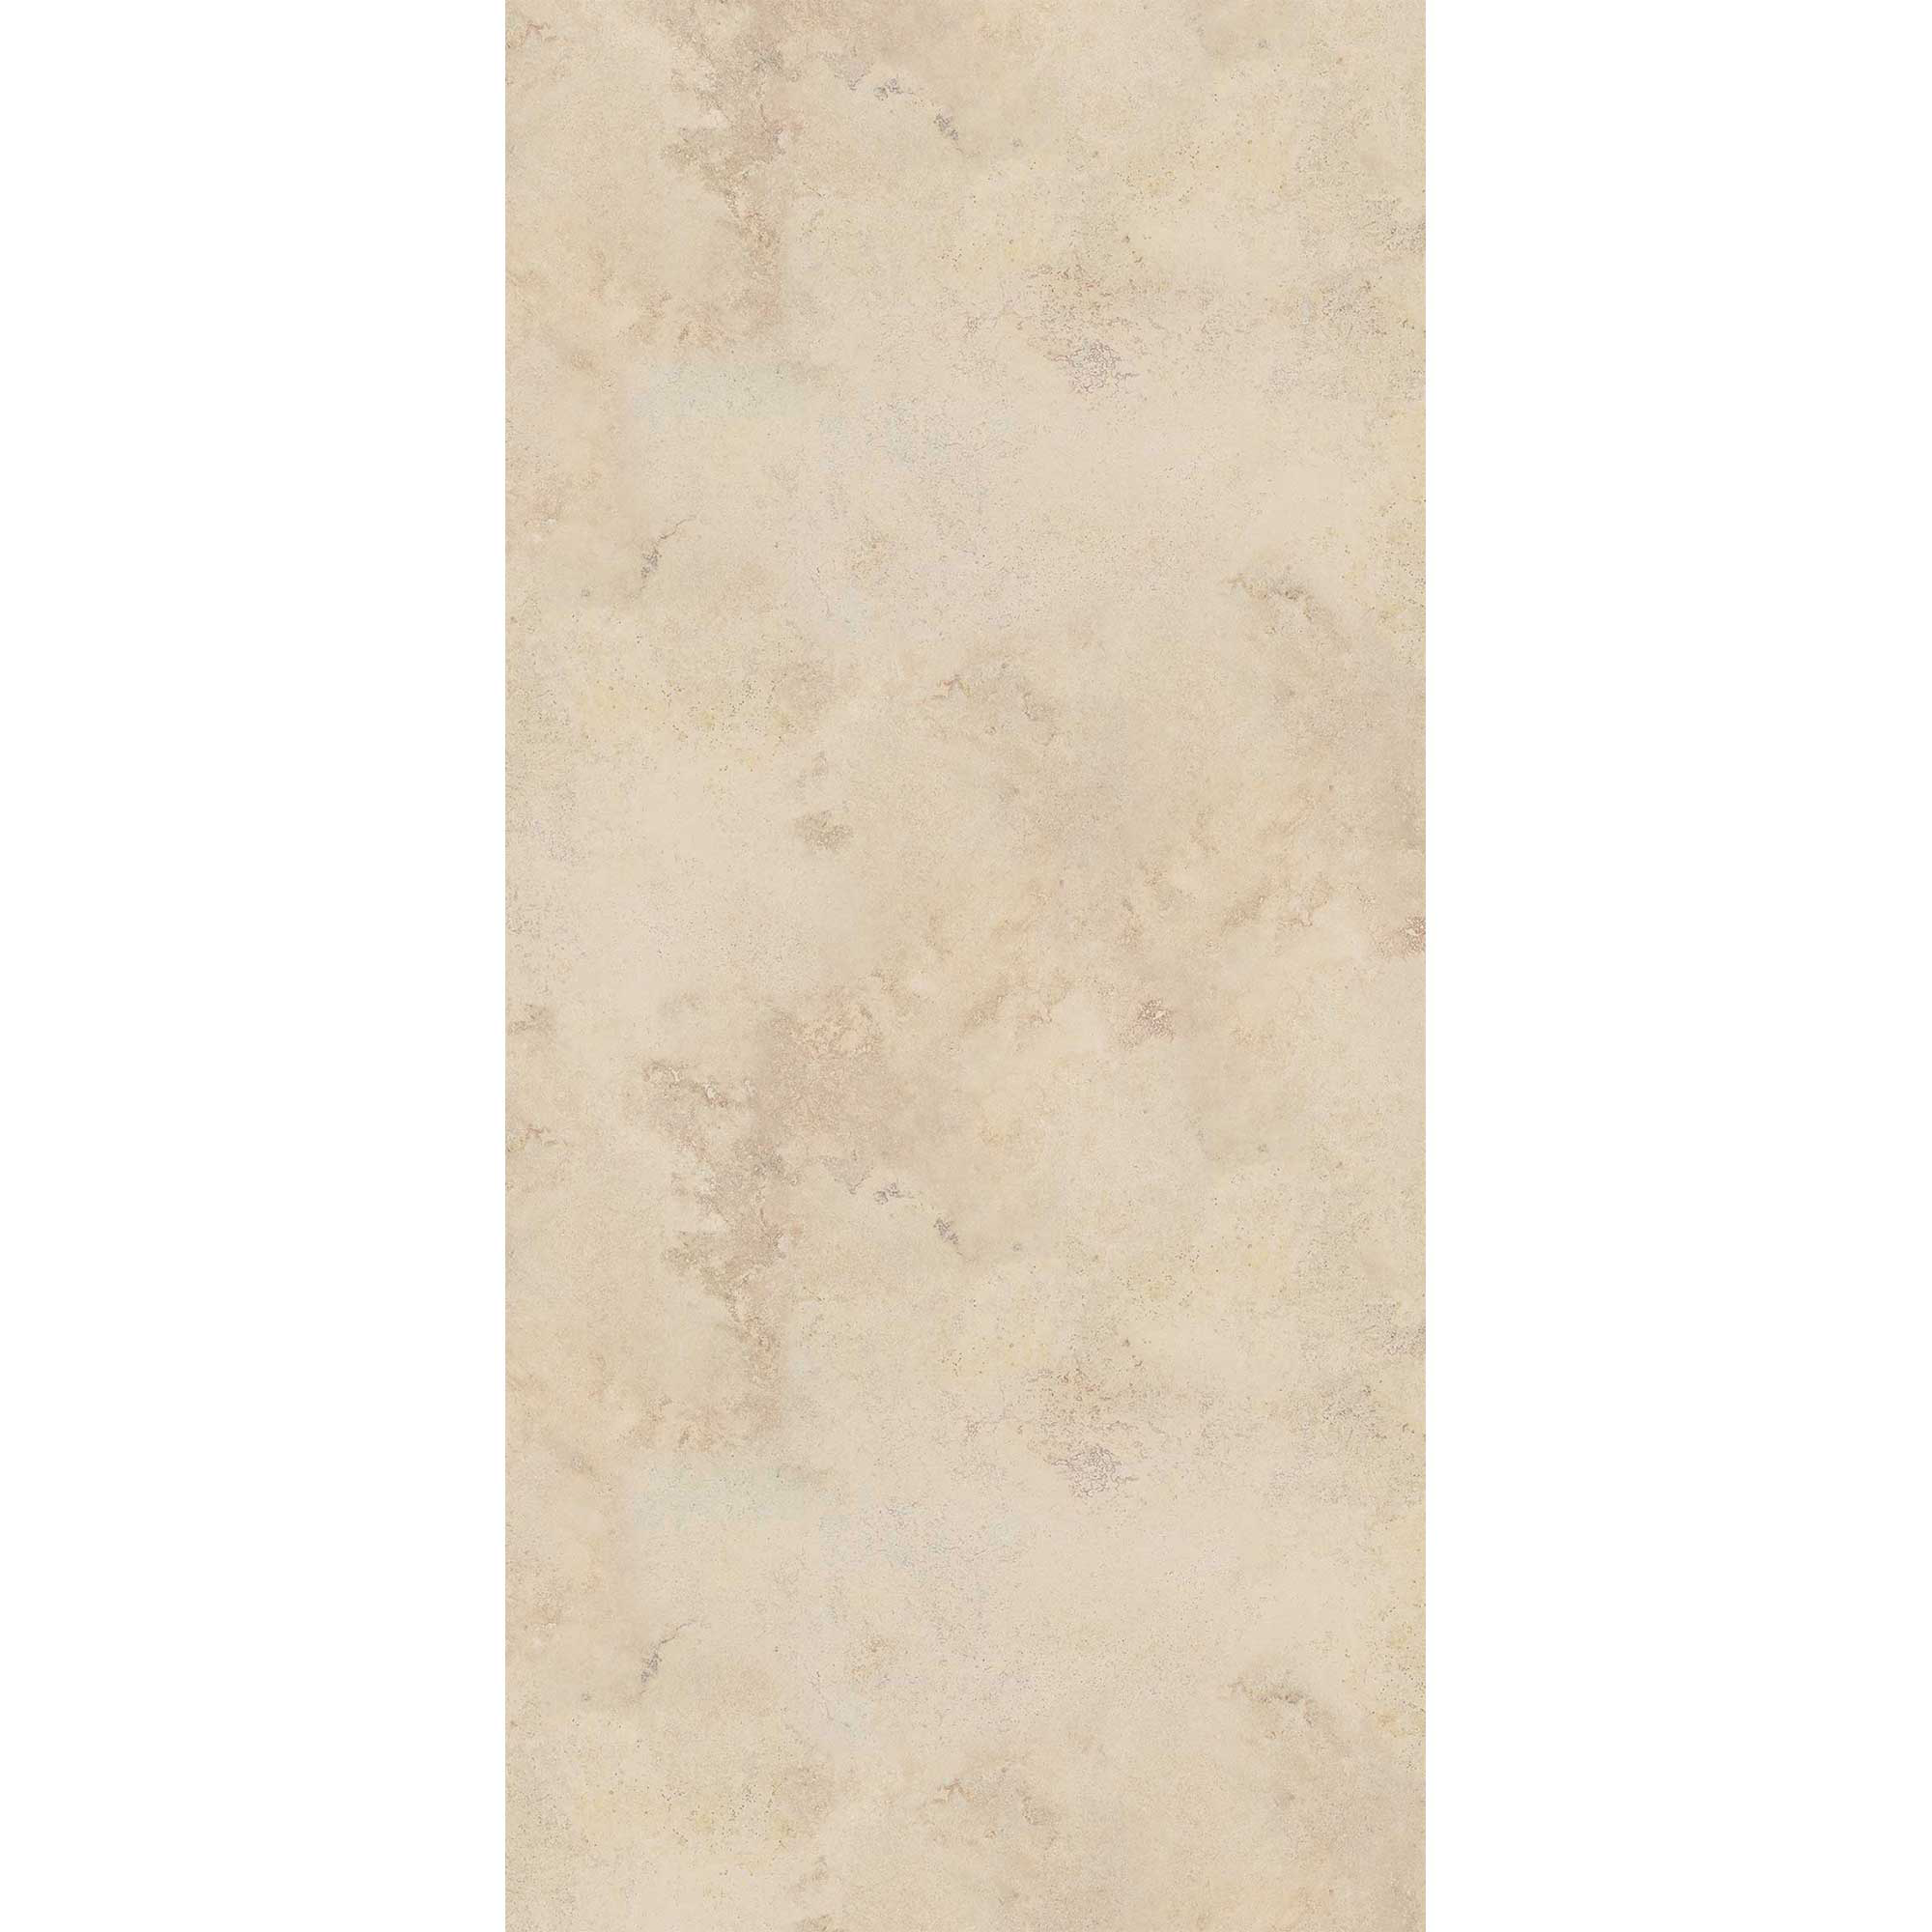 Duschrückwand 'Quick72' hochglanz Sandsteinoptik beige 100 x 210 cm + product picture